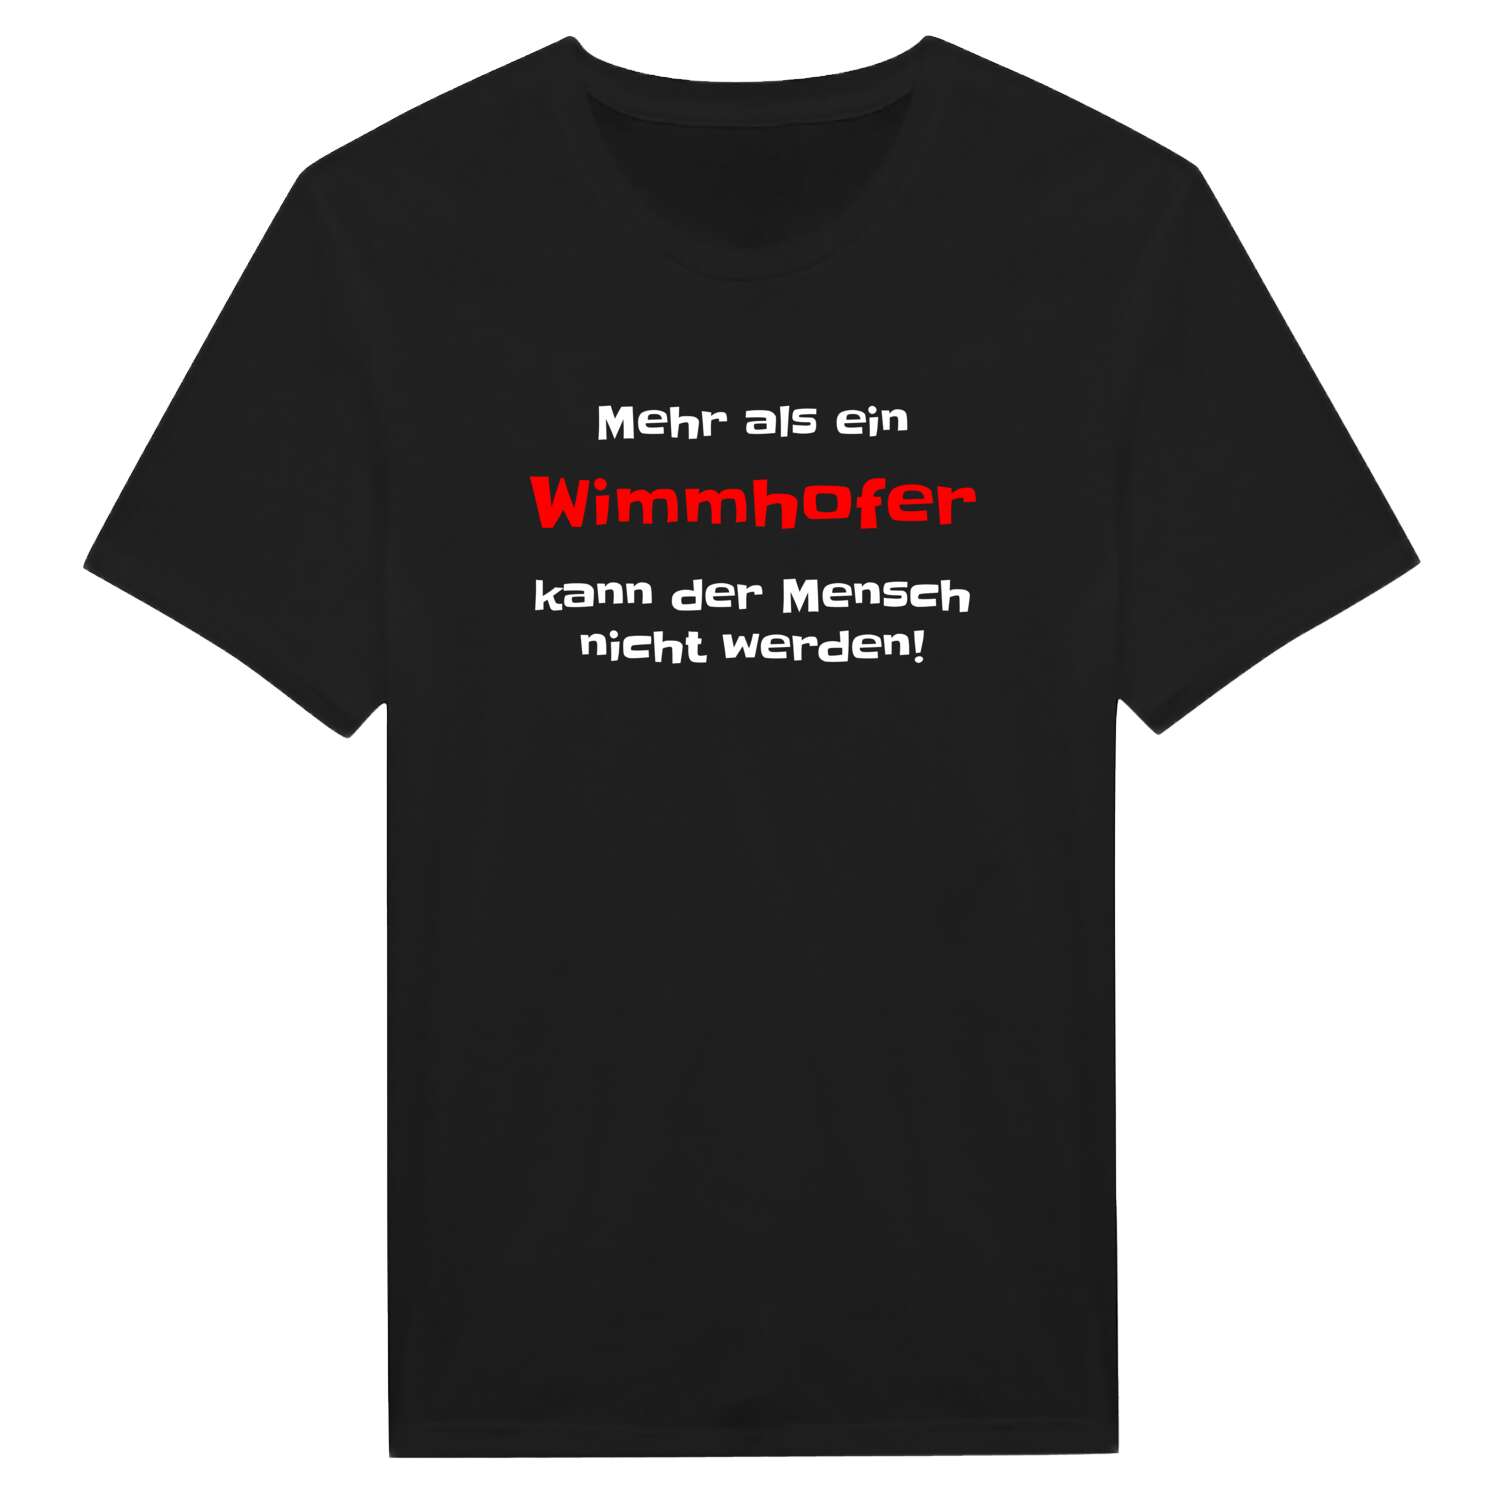 Wimmhof T-Shirt »Mehr als ein«